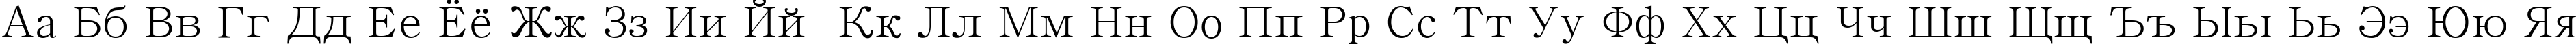 Пример написания русского алфавита шрифтом Batang